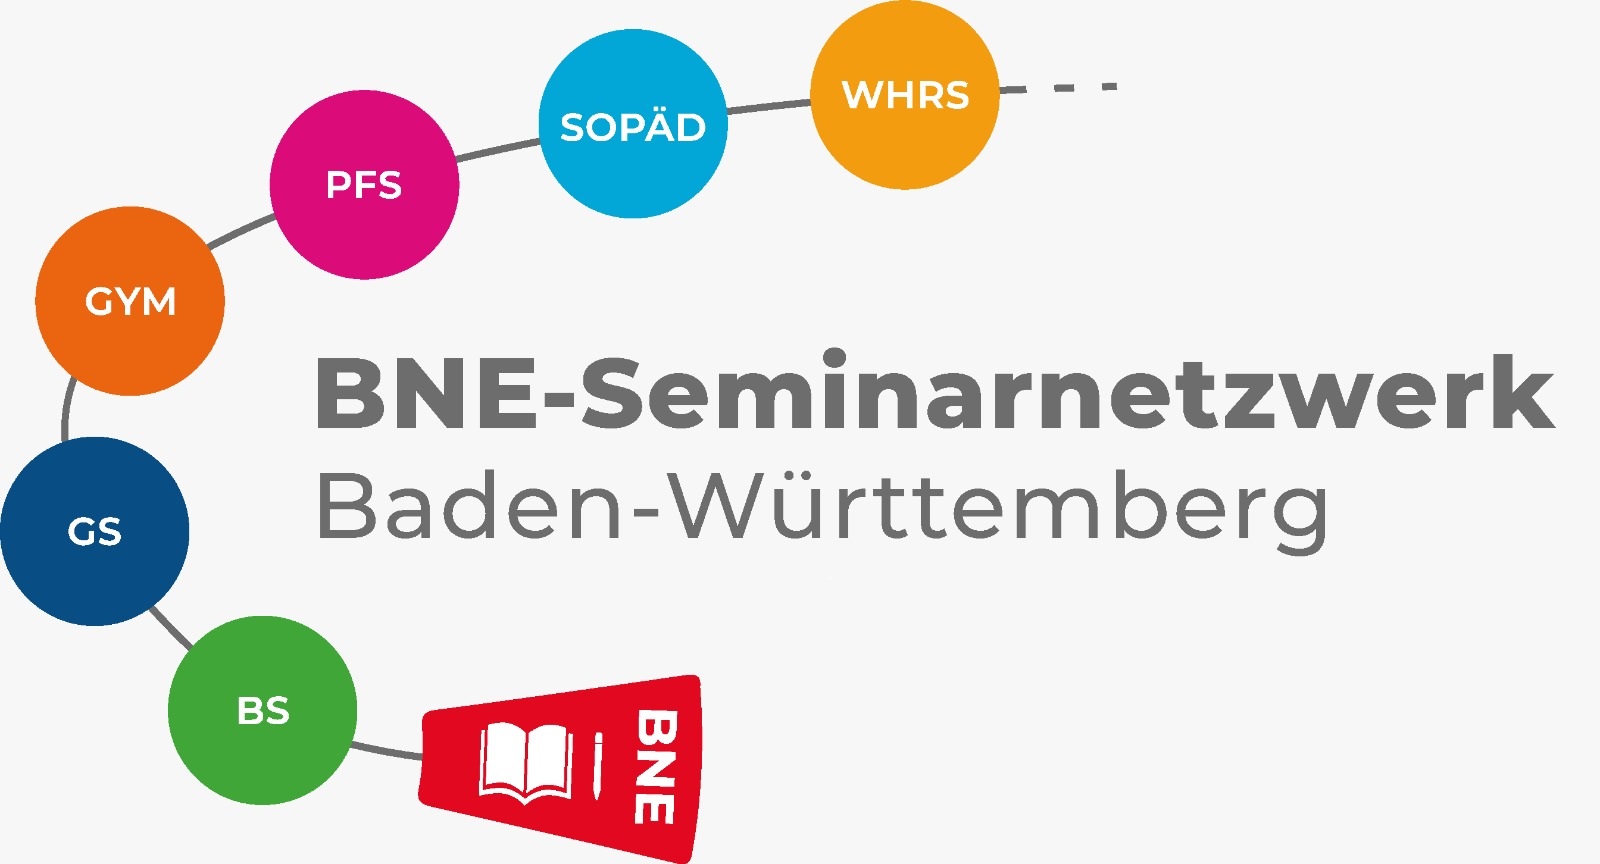 Logo BNE-Seminarnetzwerk Baden-Württemberg mit benennung der einzlnen Schularten